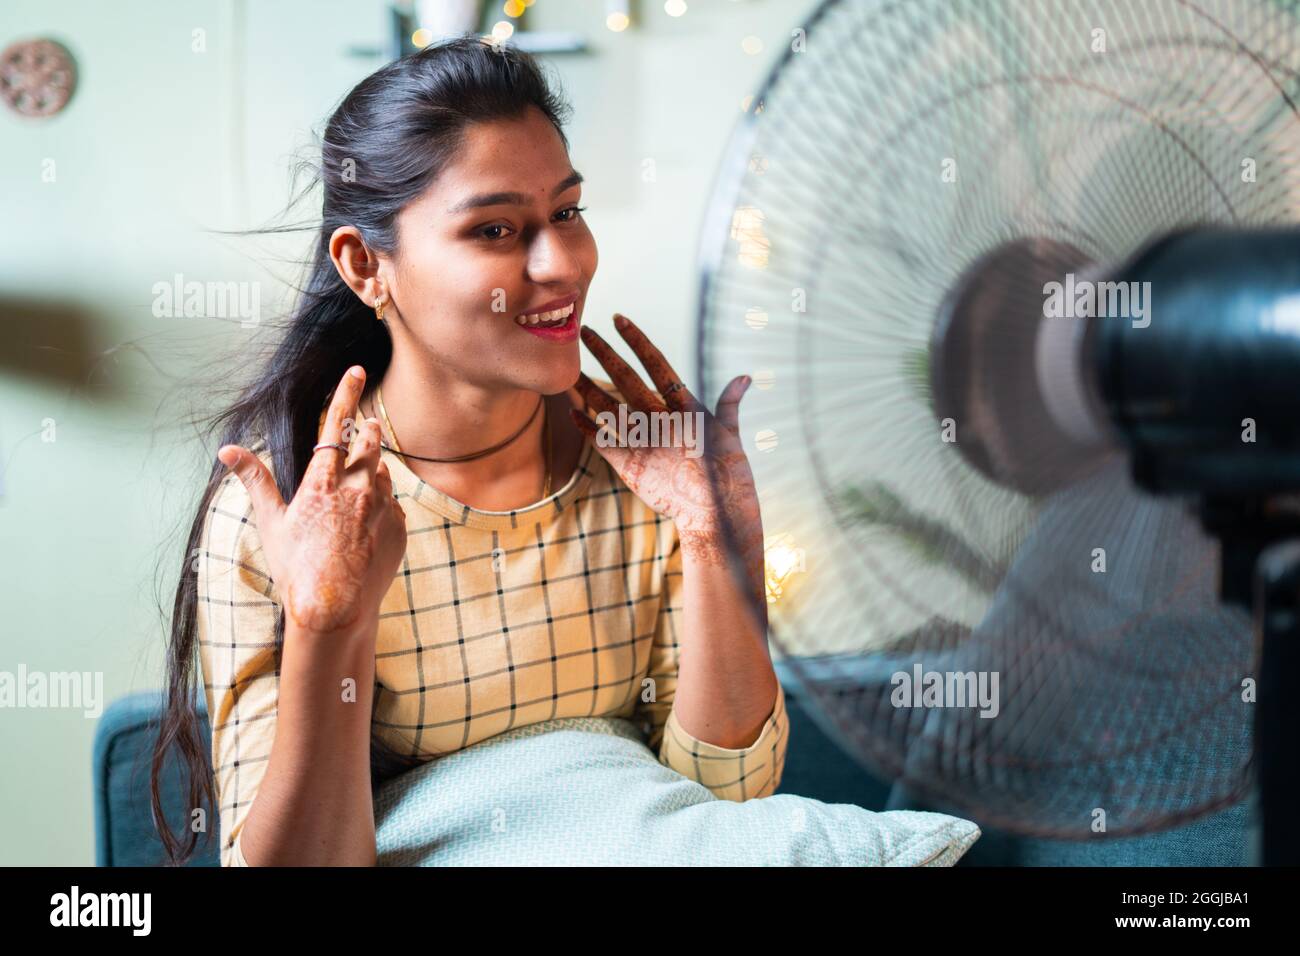 Glücklich lächelnde indische Frau, die während des Hitzeschlages auf der Couch sitzt, die Ventilatorluft genießt - Konzept der Hitzewelle oder das Gefühl der kühlen Luft aus dem Ventilator zu Hause. Stockfoto